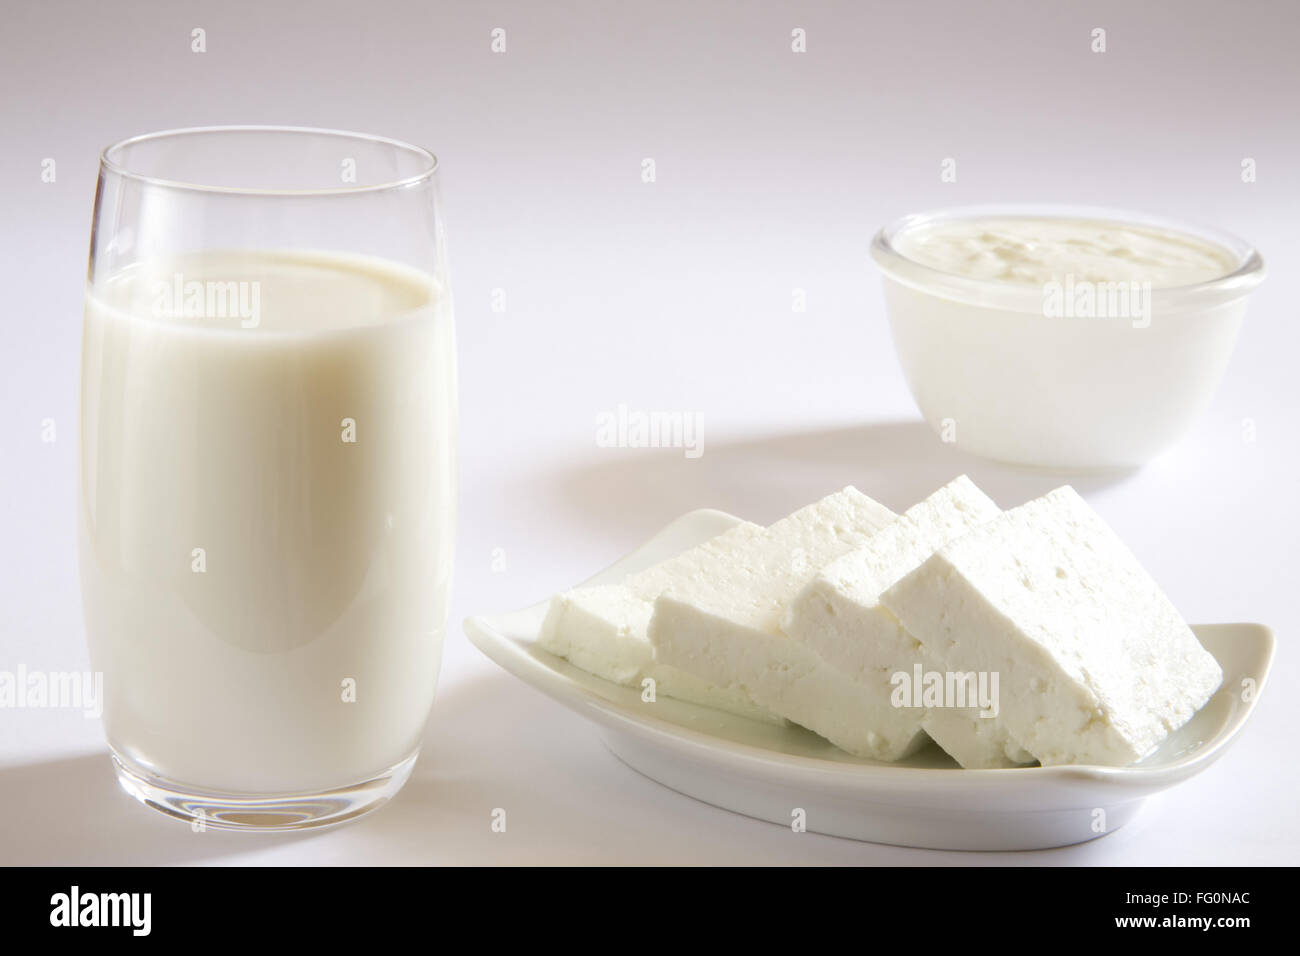 Le lait caillé Dahi yogourt fromage cottage paneer accueil ou un produit laitier Banque D'Images